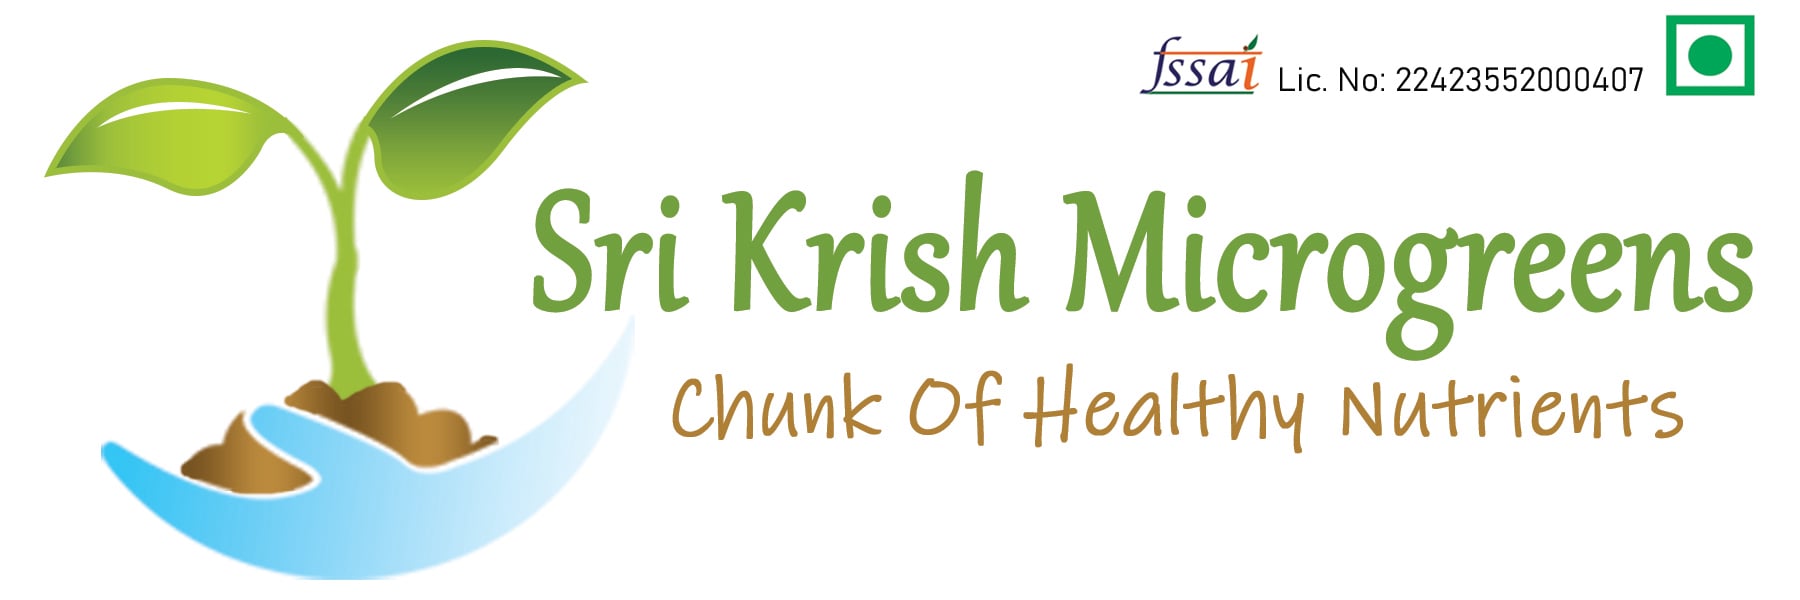 Sri Krish Microgreens